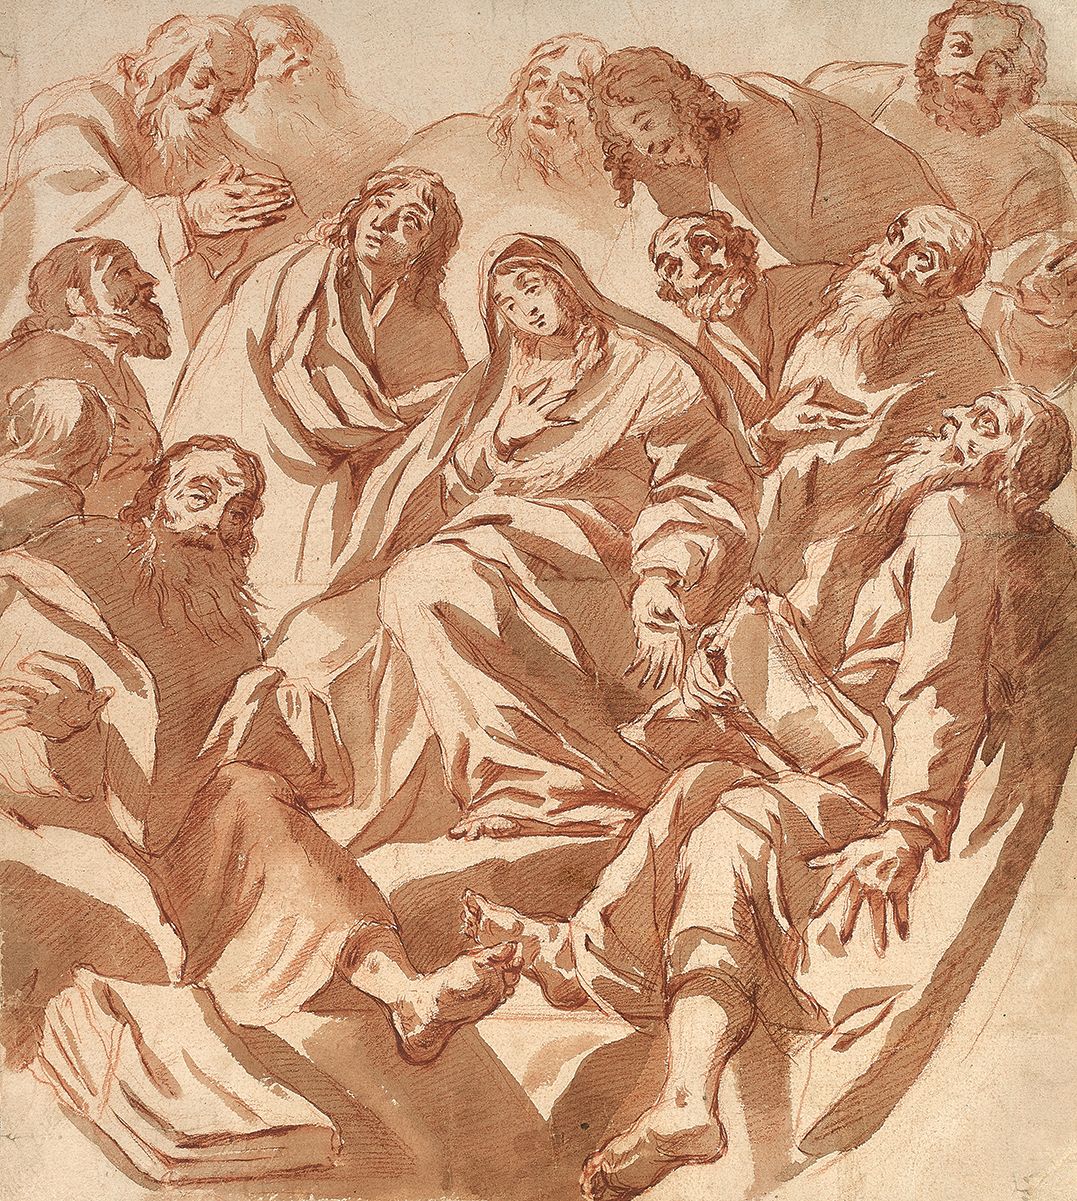 CLAUDE VIGNON (TOURS 1593-PARIS 1670) La Vergine circondata dagli Apostoli
Lavag&hellip;